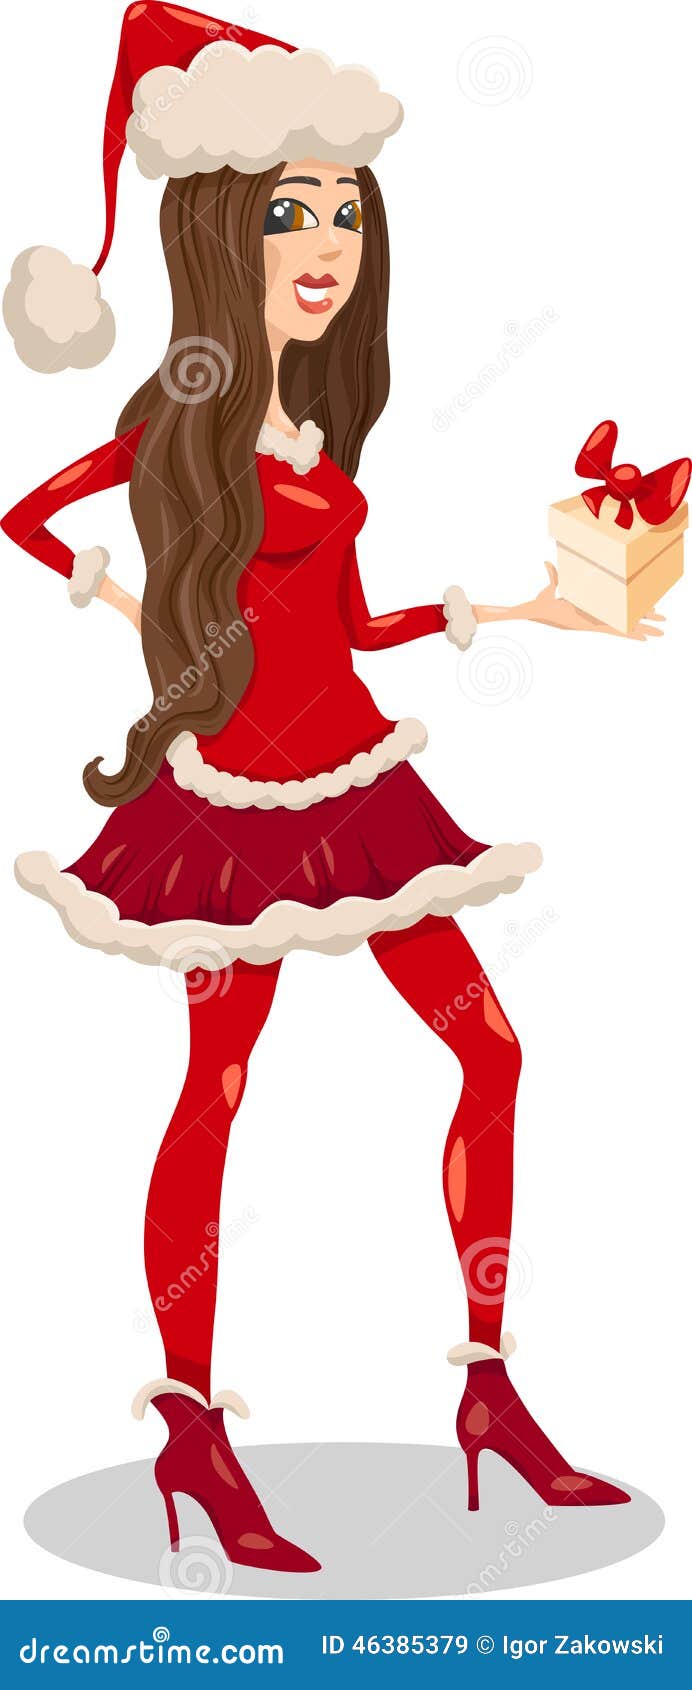 Girl Santa Claus Cartoon Illustration Stock Vector Illustration Of